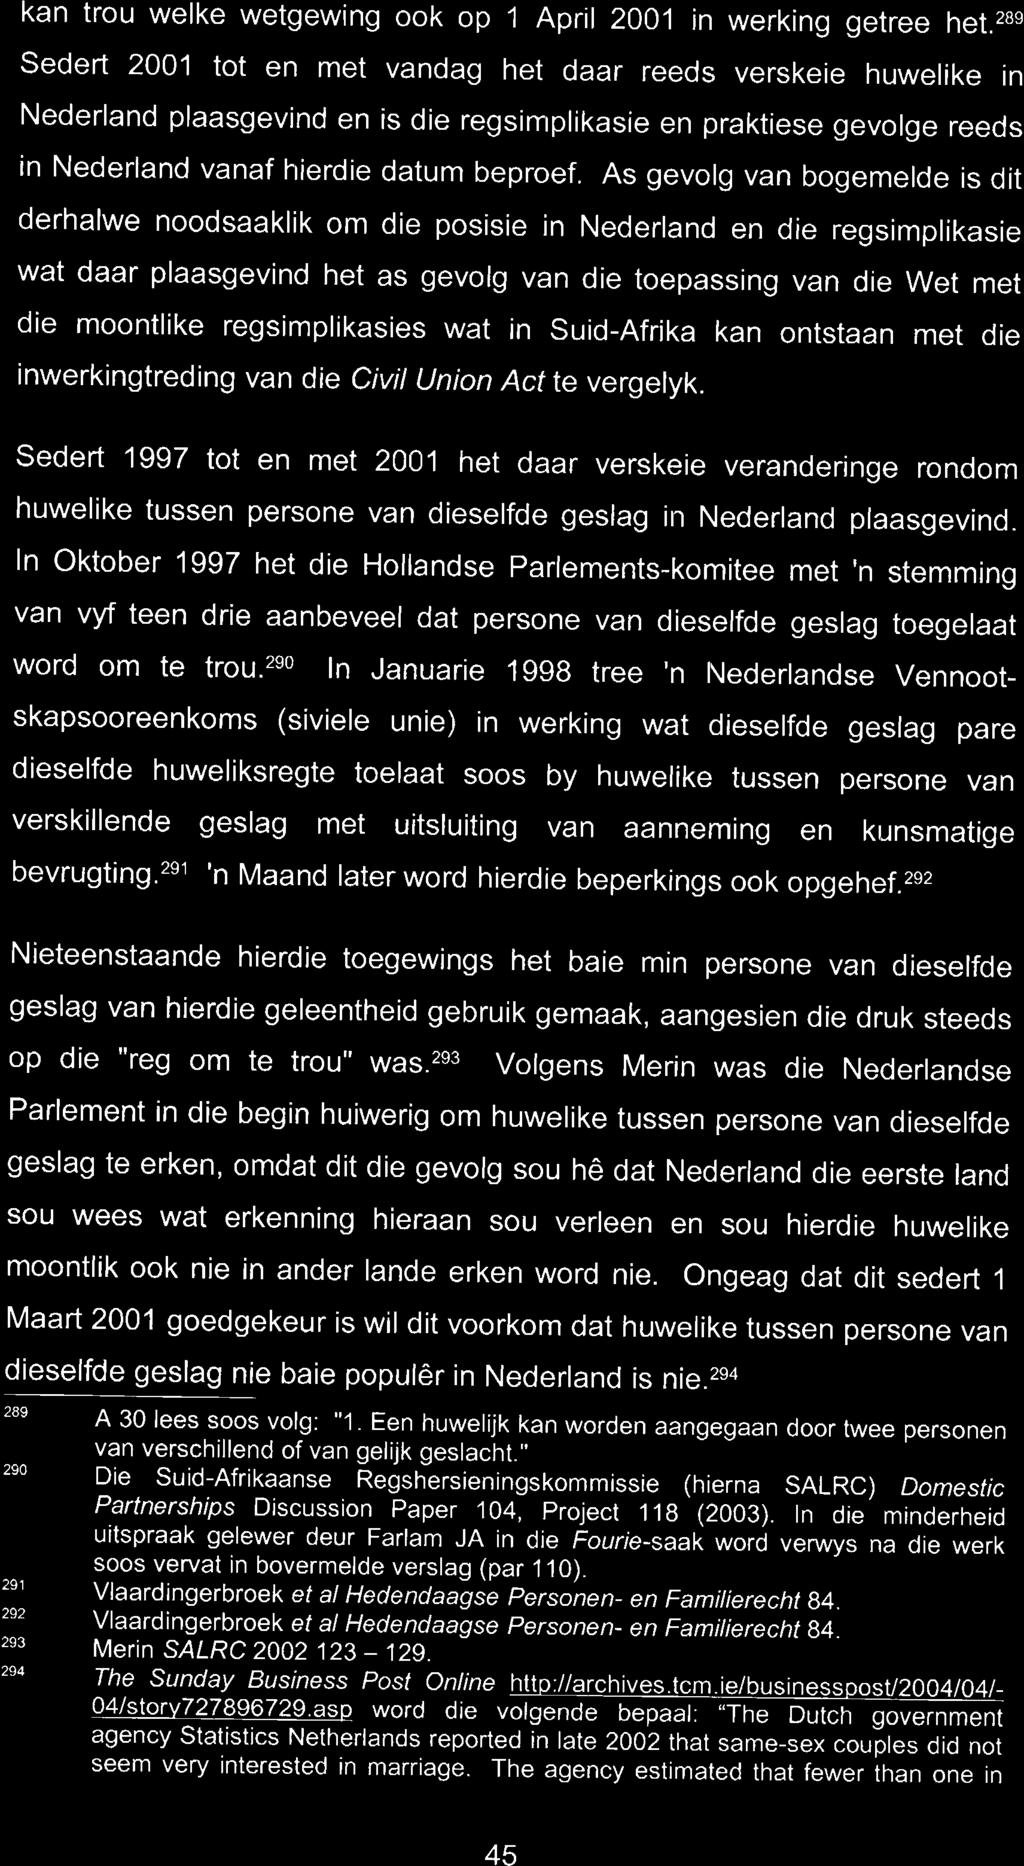 Sedert 1997 tot en met 2001 het daar verskeie veranderinge rondom huwelike tussen persone van dieselfde geslag in Nederland plaasgevind.